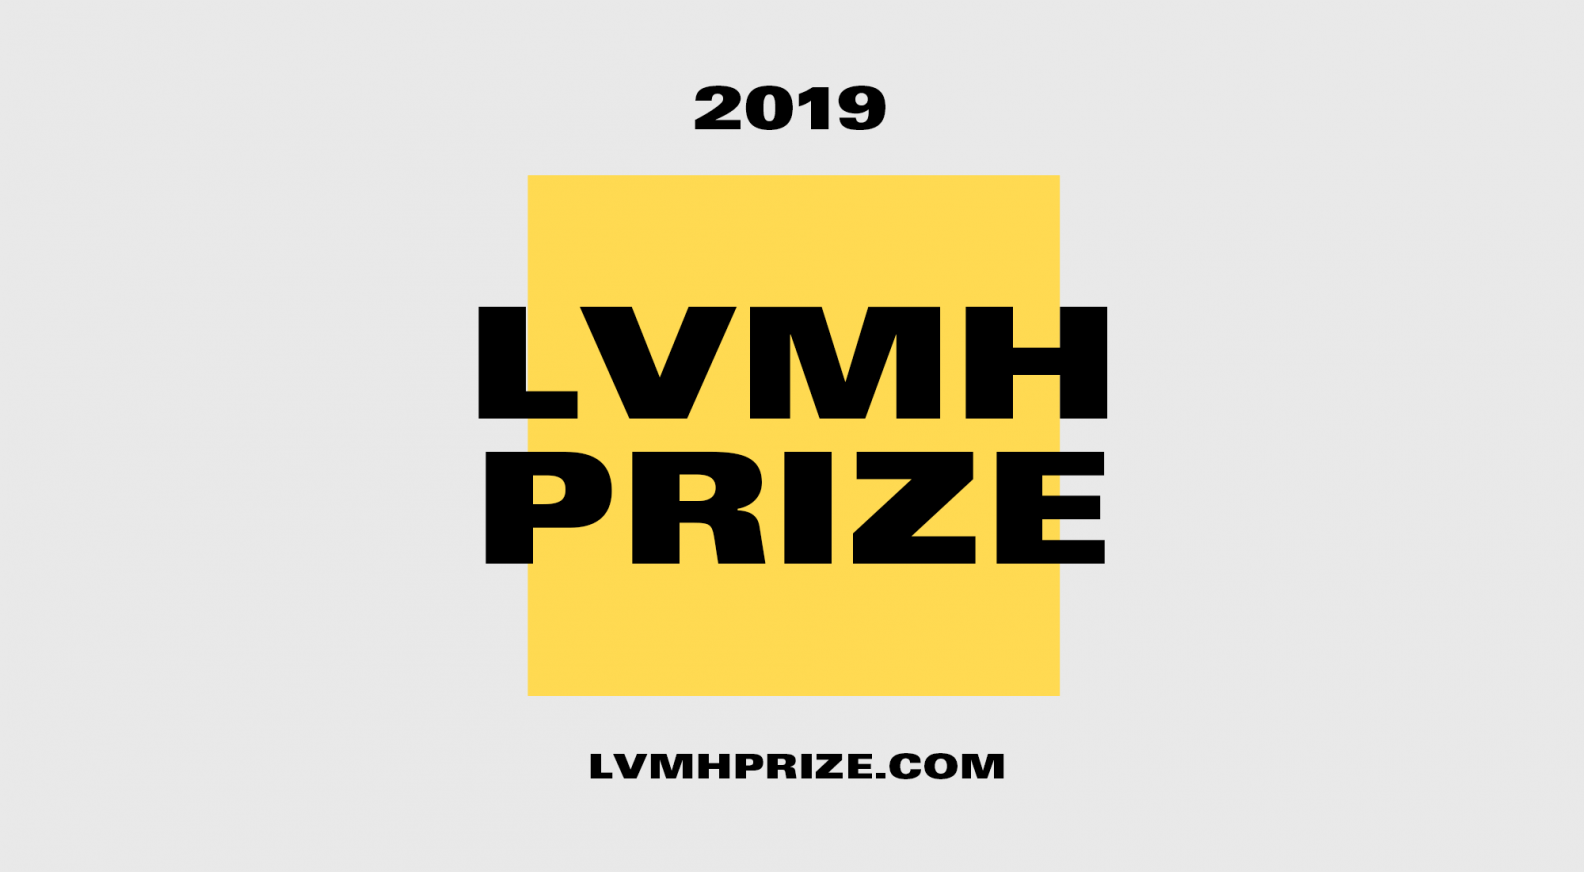 LVMH Prize ушли на каникулы до сентября